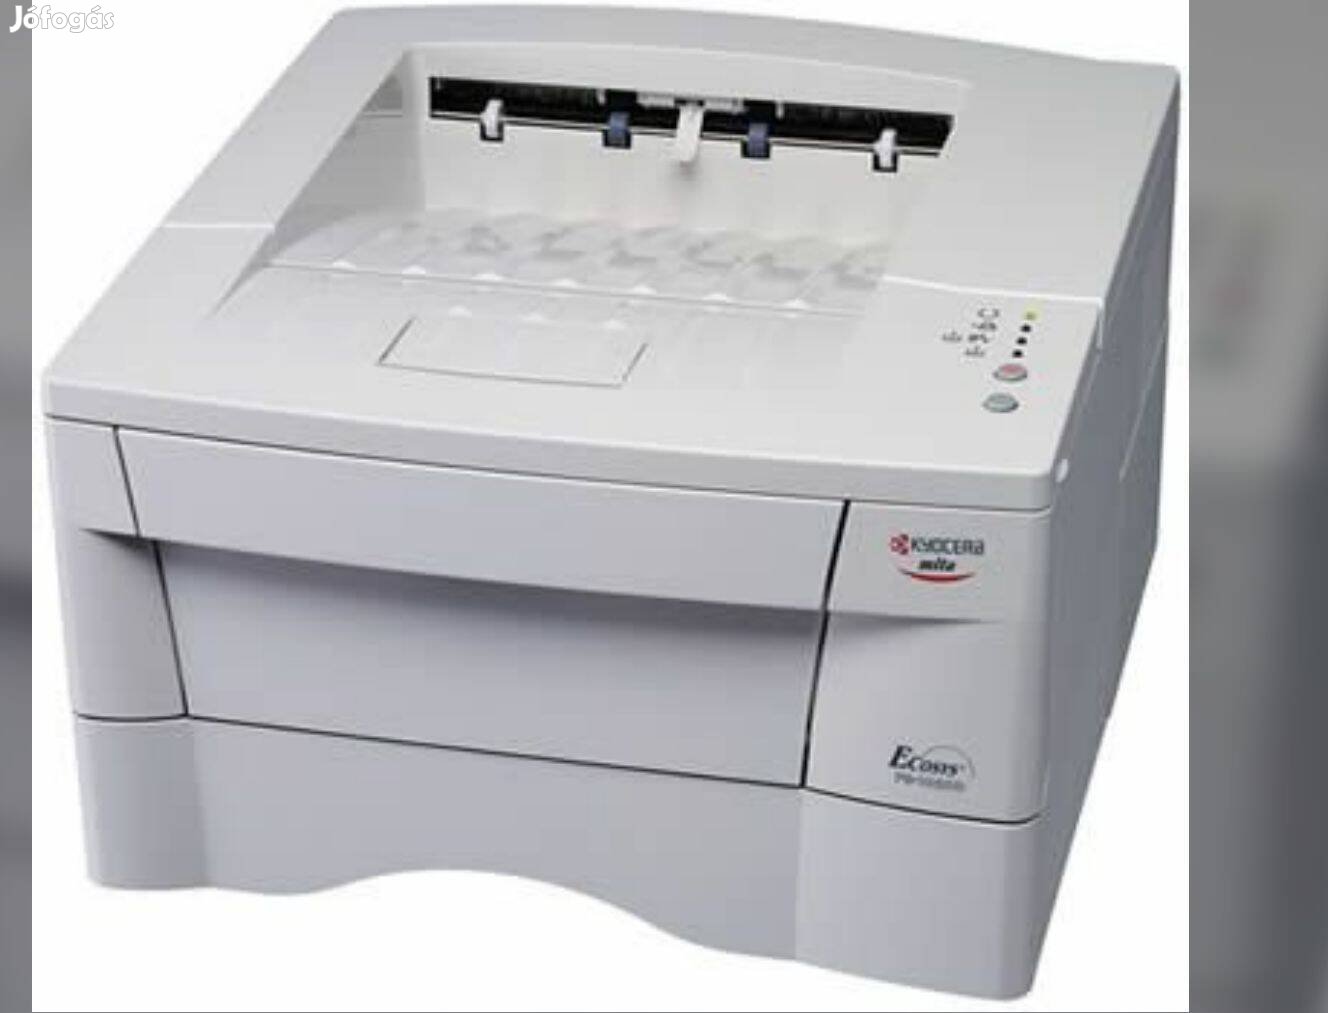 Kyocera lézer printer eladó